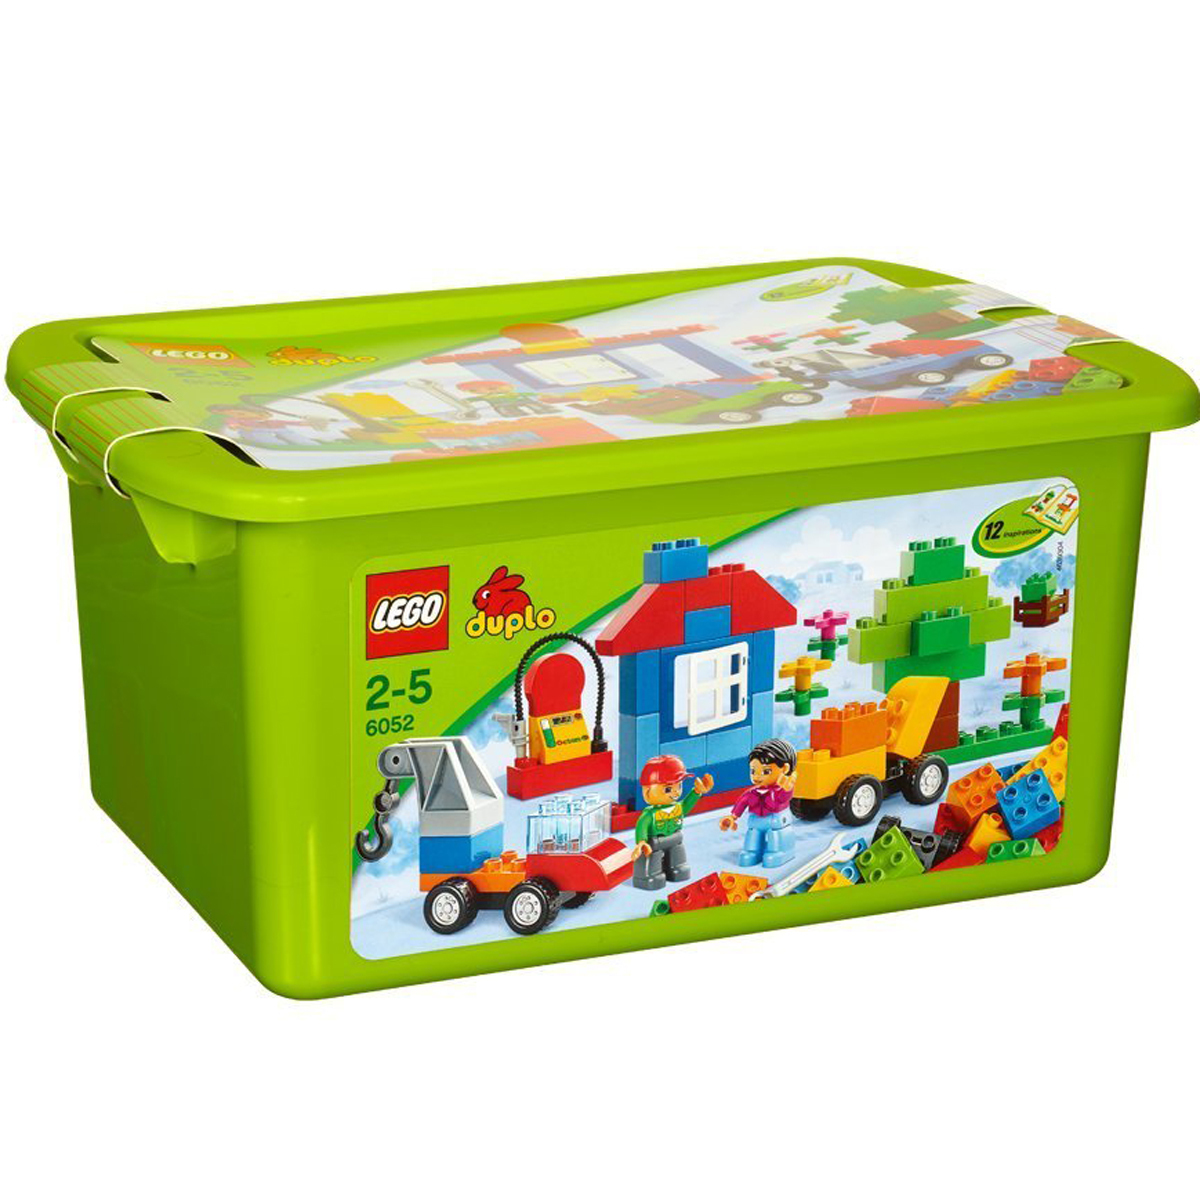 Bộ xếp hình Bộ phương tiện di chuyển đầu tiên Lego Duplo 6052